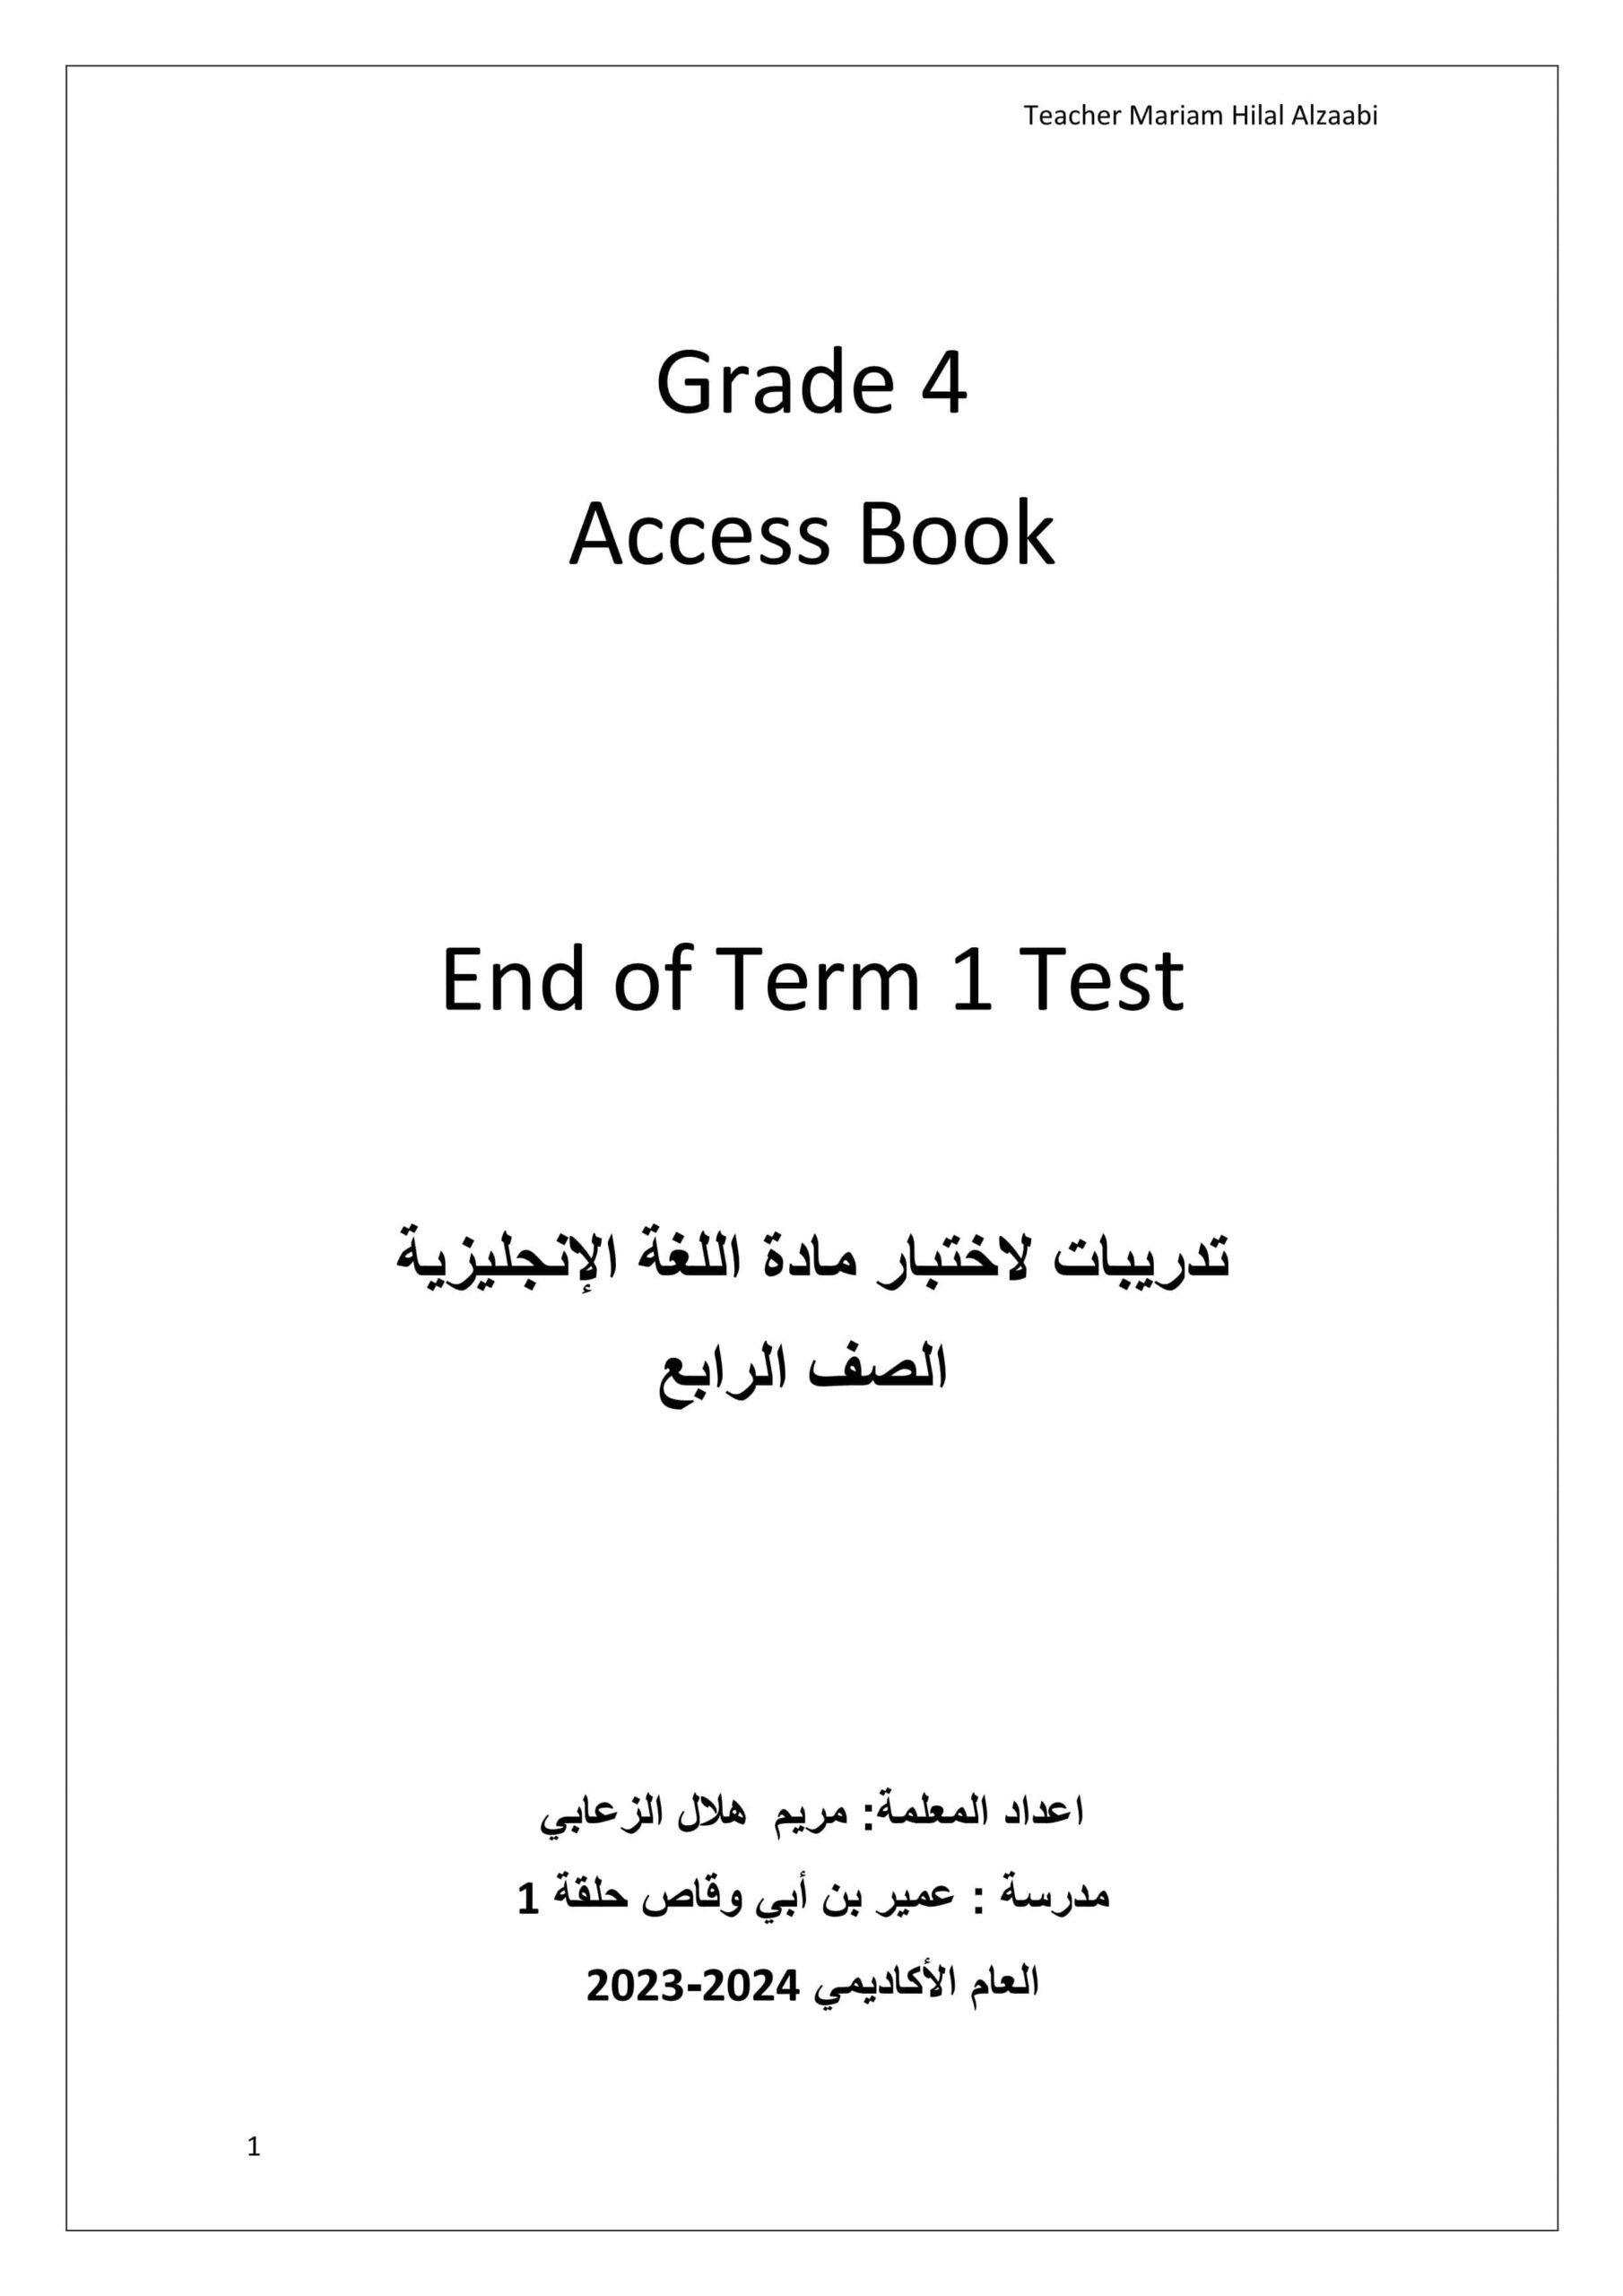 تدريبات للاختبار النهائي حسب الهيكل اللغة الإنجليزية الصف الرابع Access